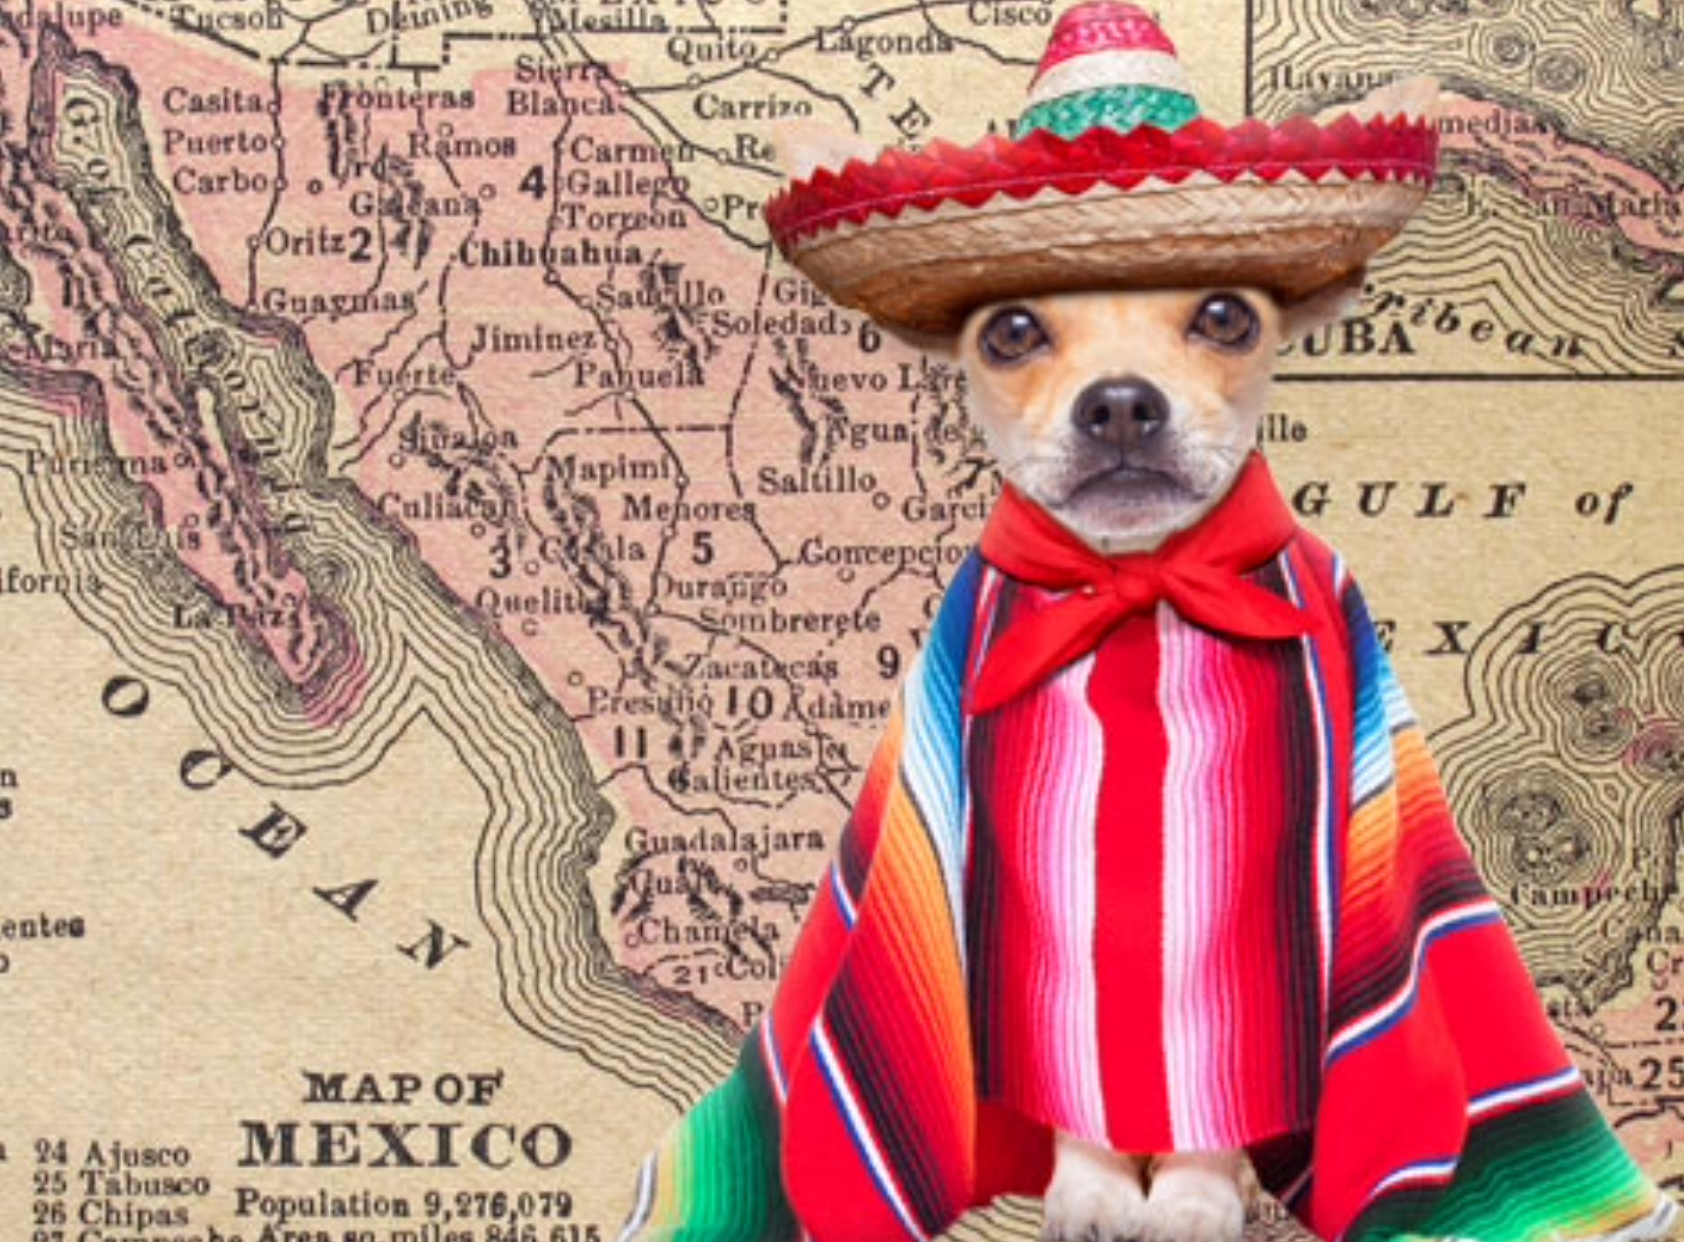 Chihuahua dug sumbrero Blank Meme Template